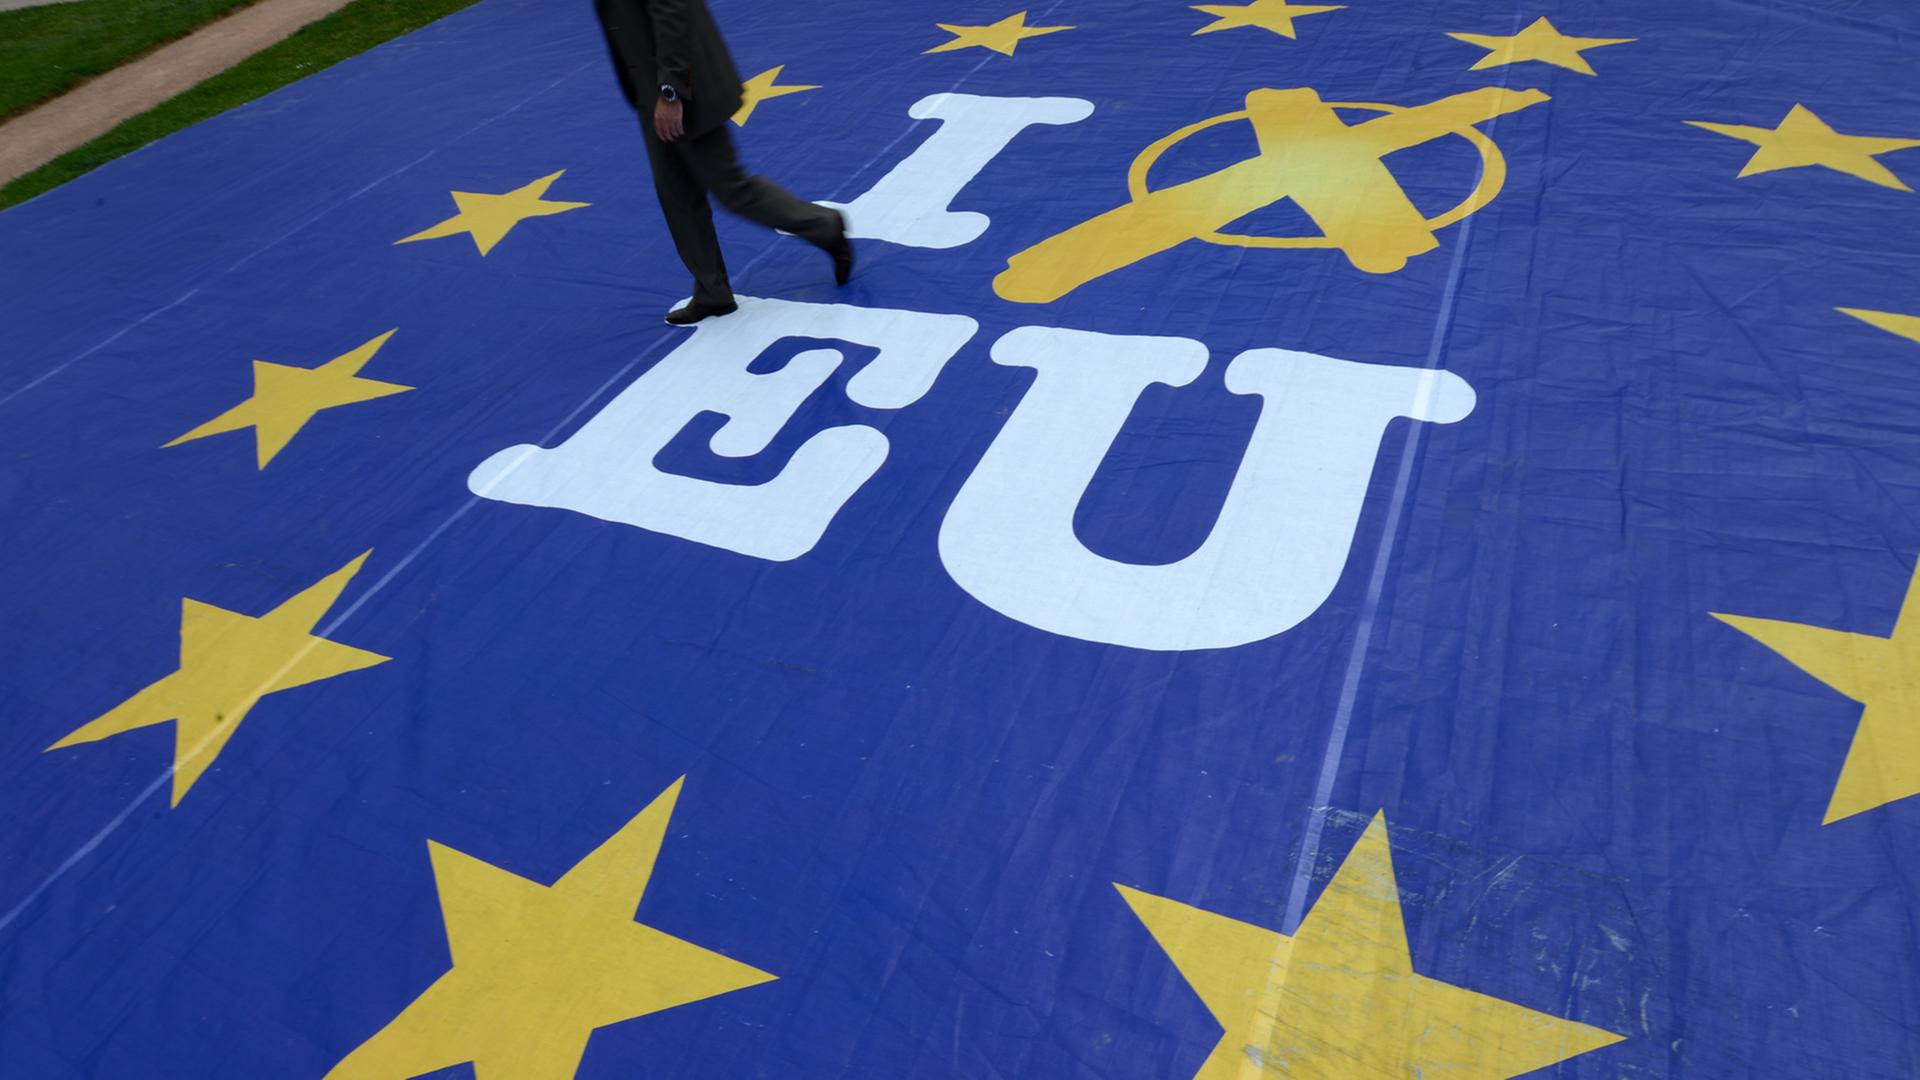 Ein Mann geht am 21.05.2014 in Wiesbaden (Hessen) über ein Aktionsbanner mit der Aufschrift "I vote EU".